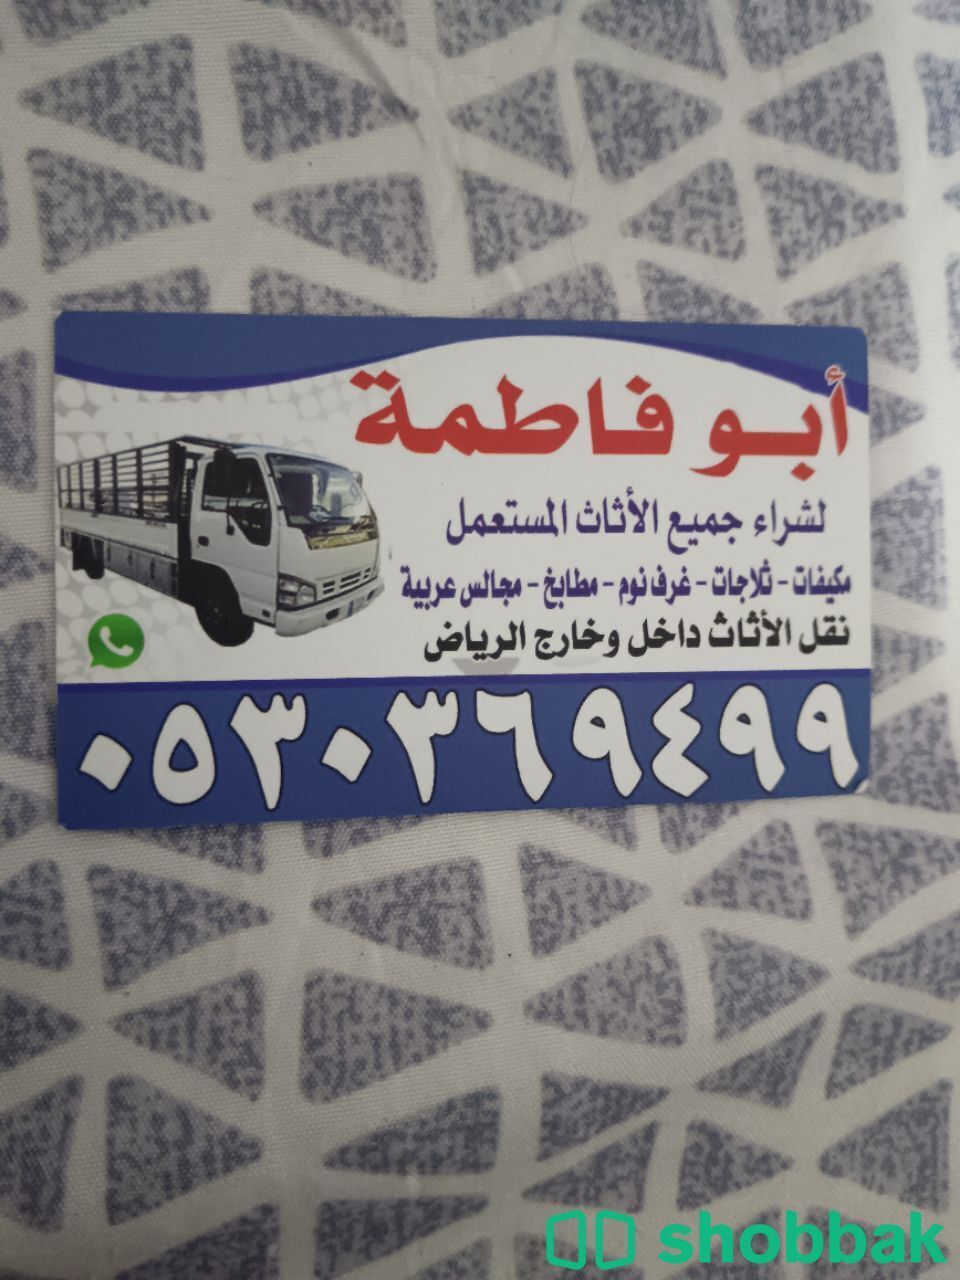 شراء أثاث مستعمل حي الريان 0530369499  Shobbak Saudi Arabia